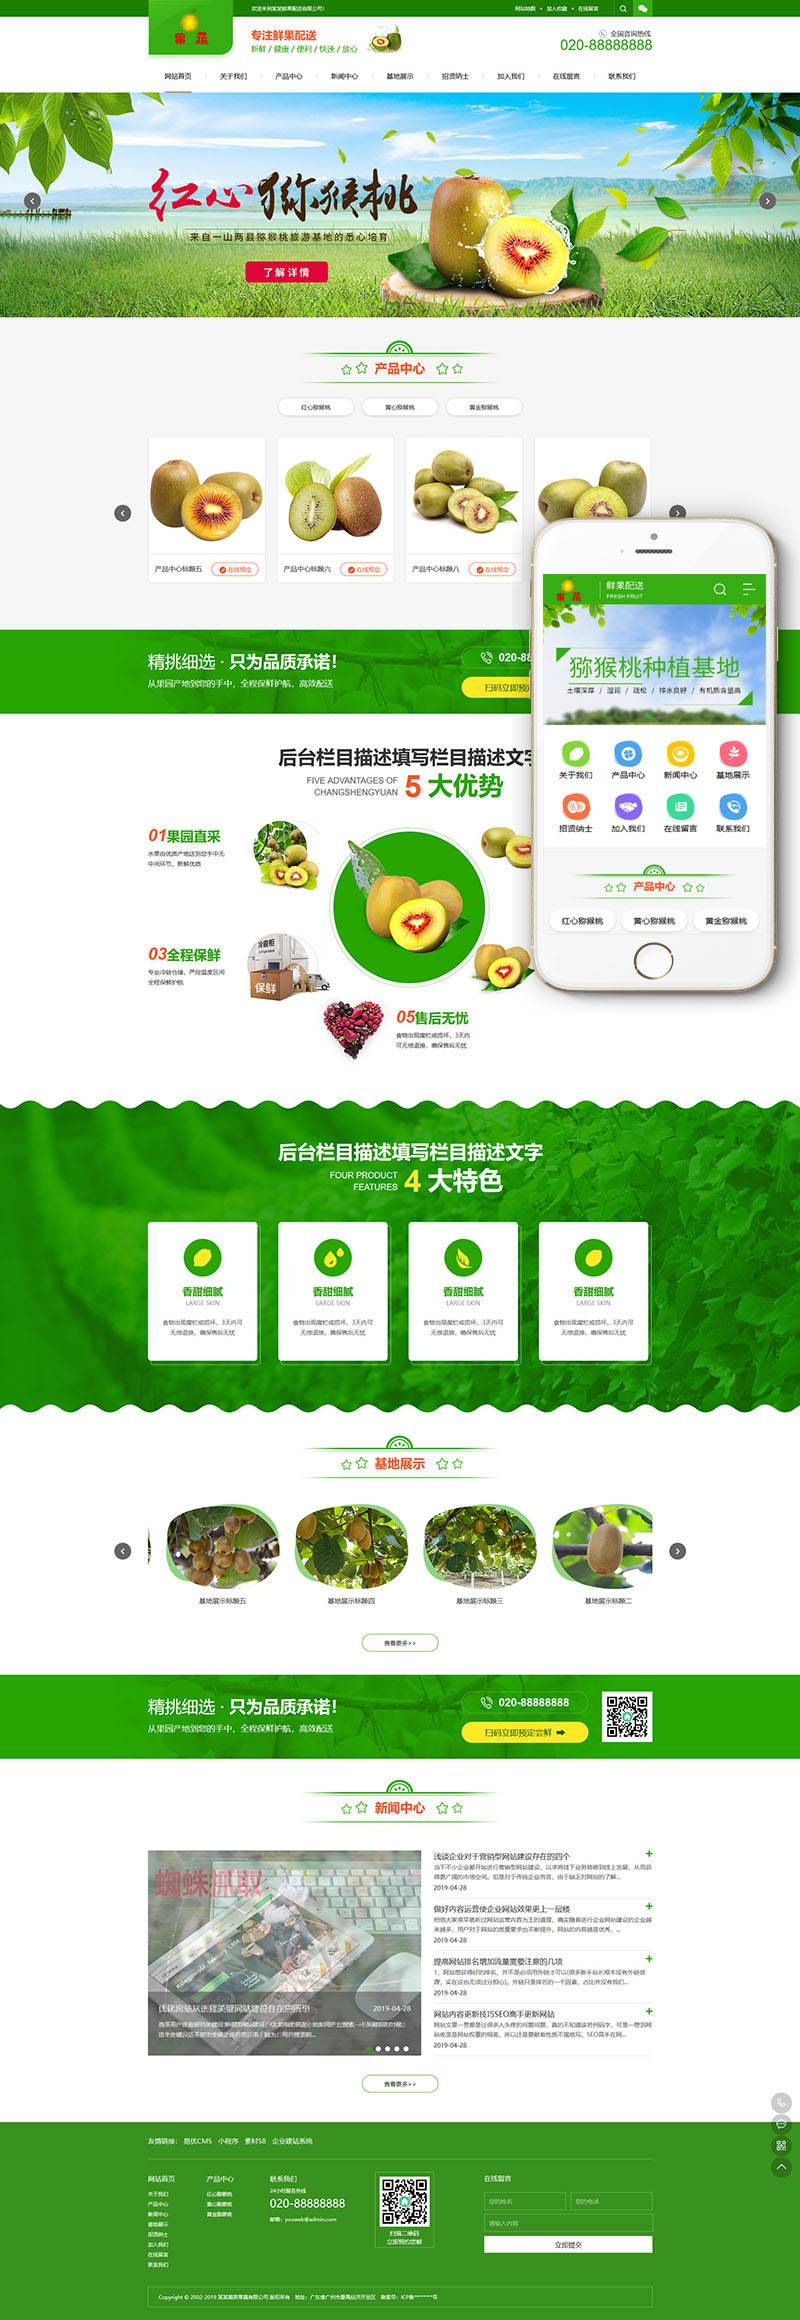 蔬菜网站模板